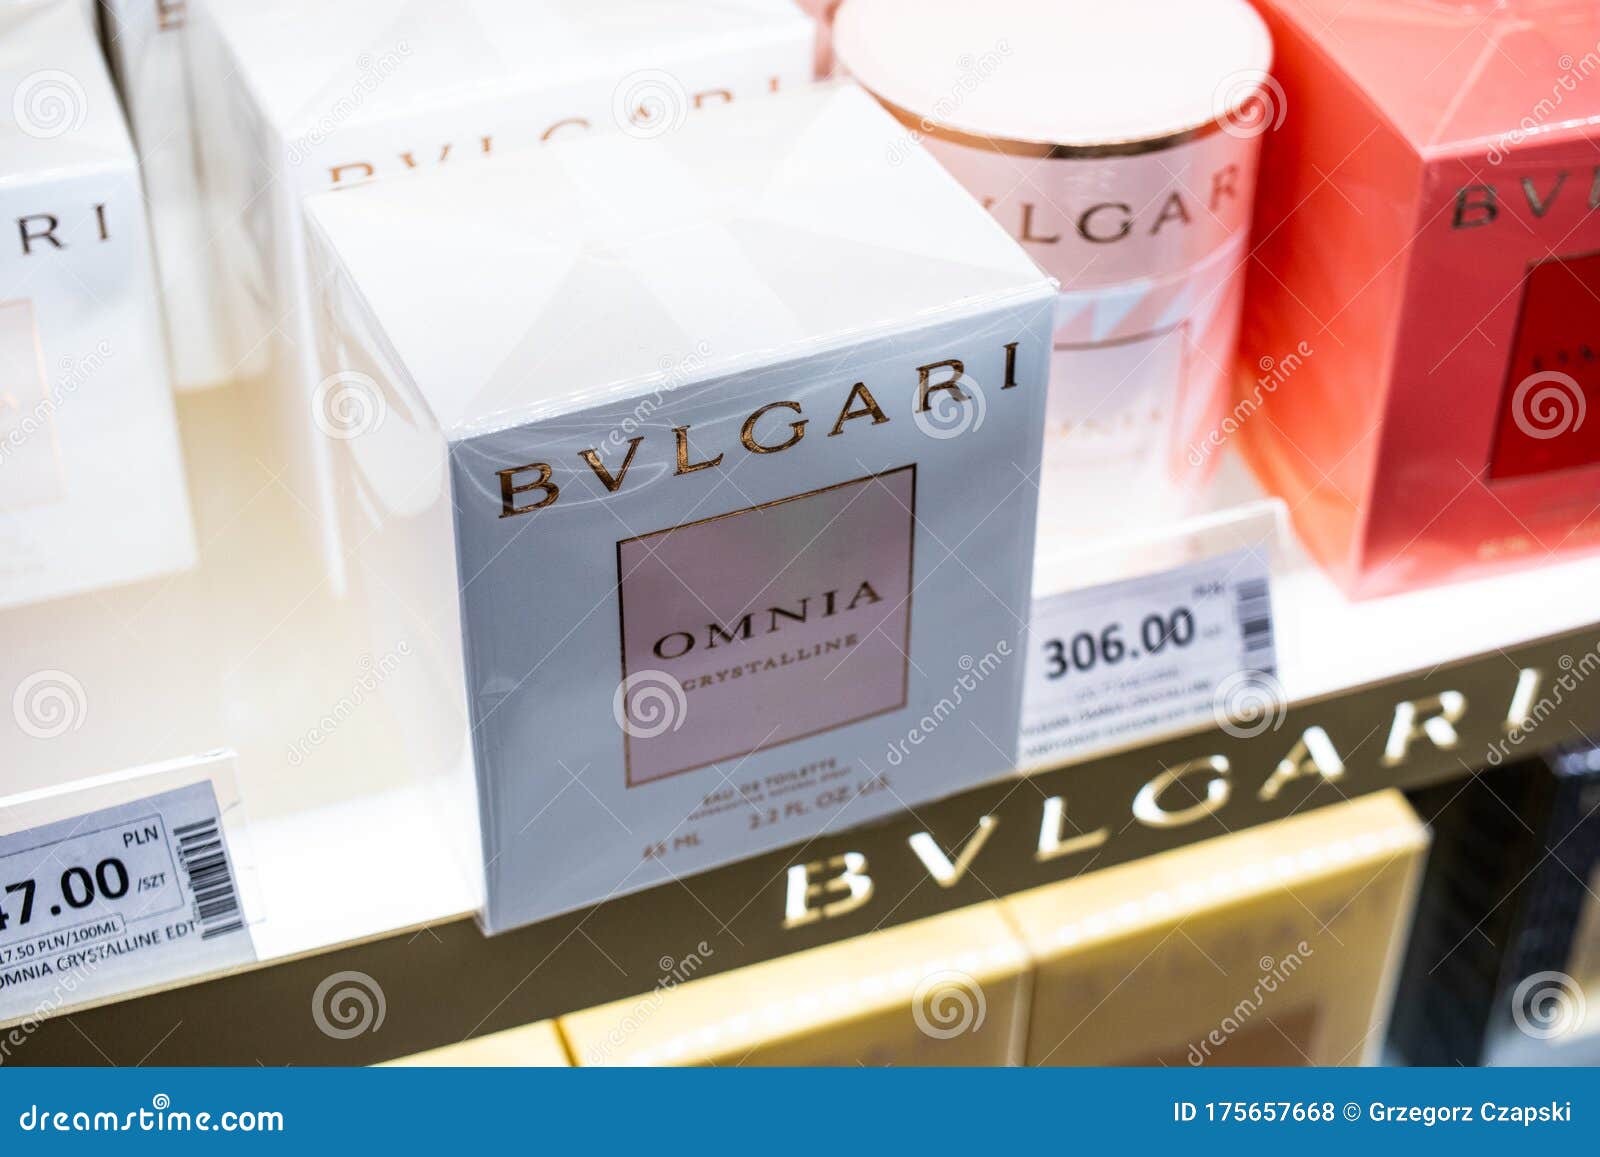 bvlgari luxury brand